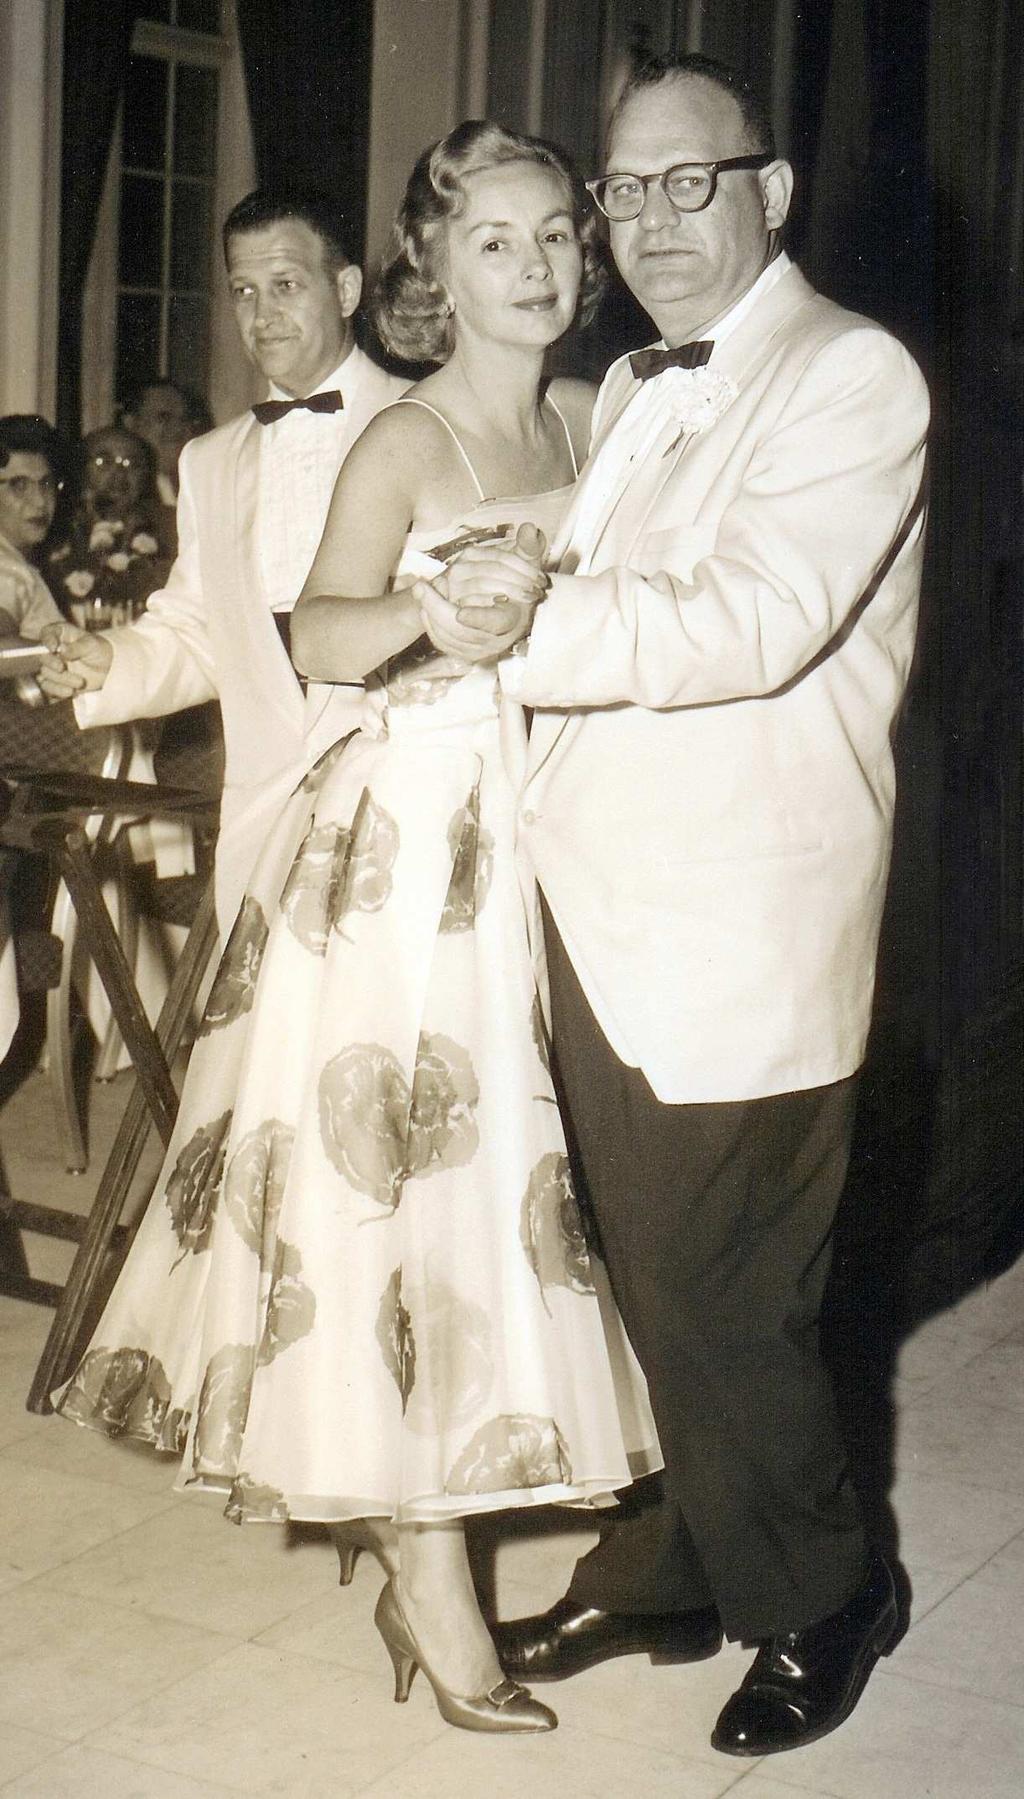 dancing at Deb and Bob's wedding, July 13, 1957